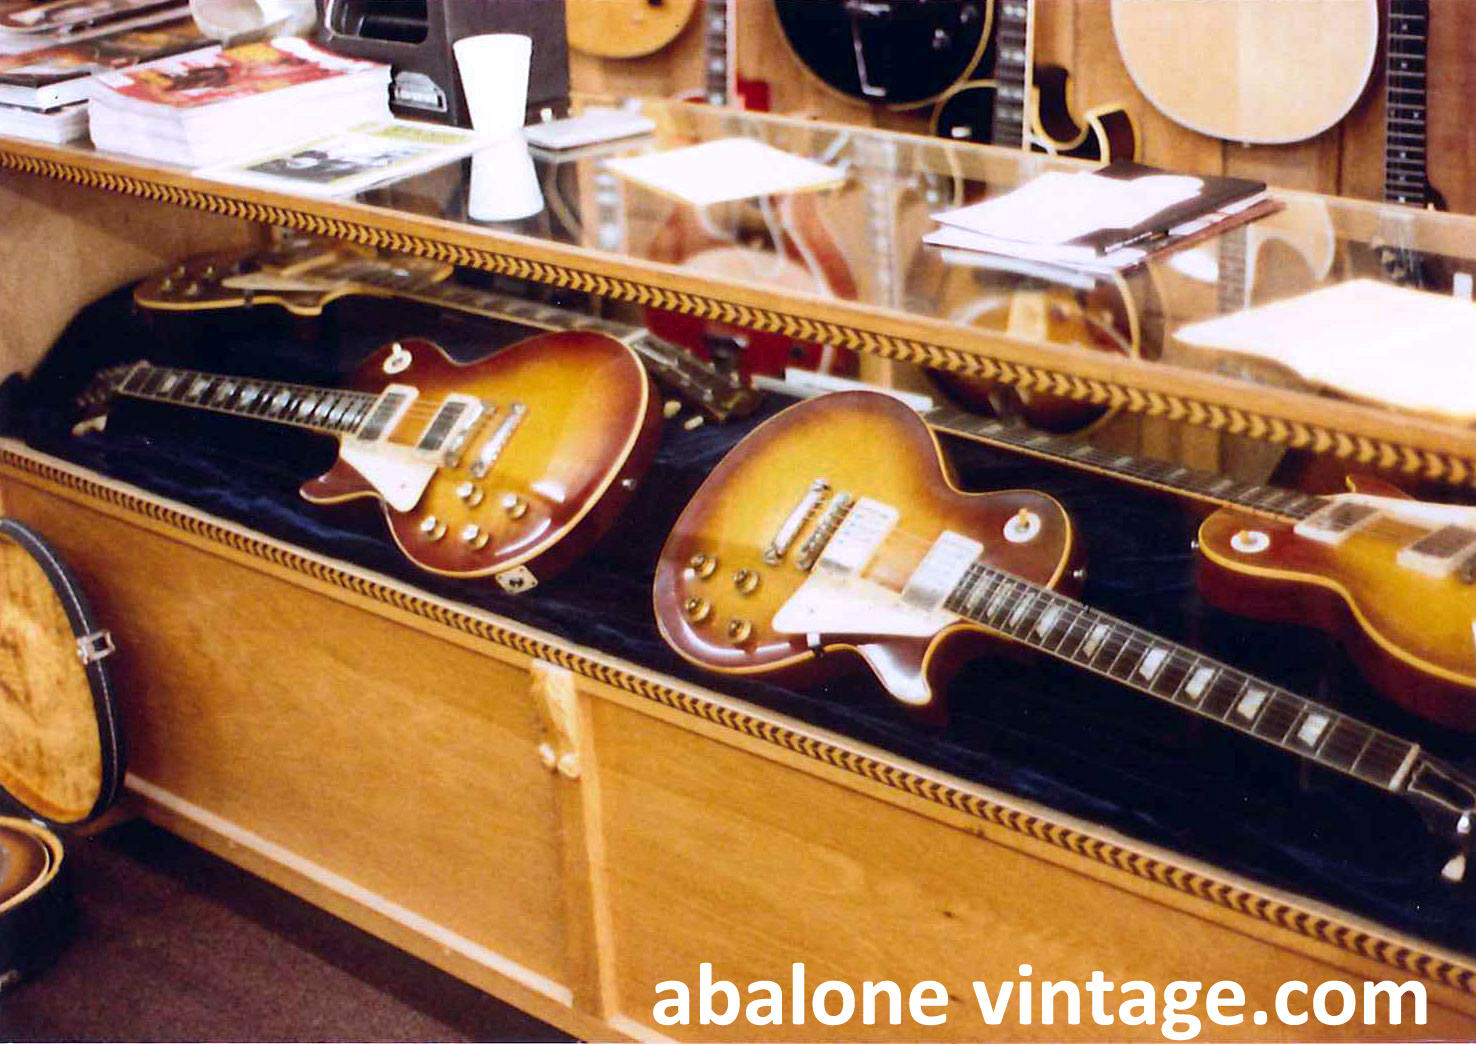 1959 Gibson Les Paul Standard guitar Miss Swiss 9 1256. Gruhn guitar Paul McCartney 1960 Burst